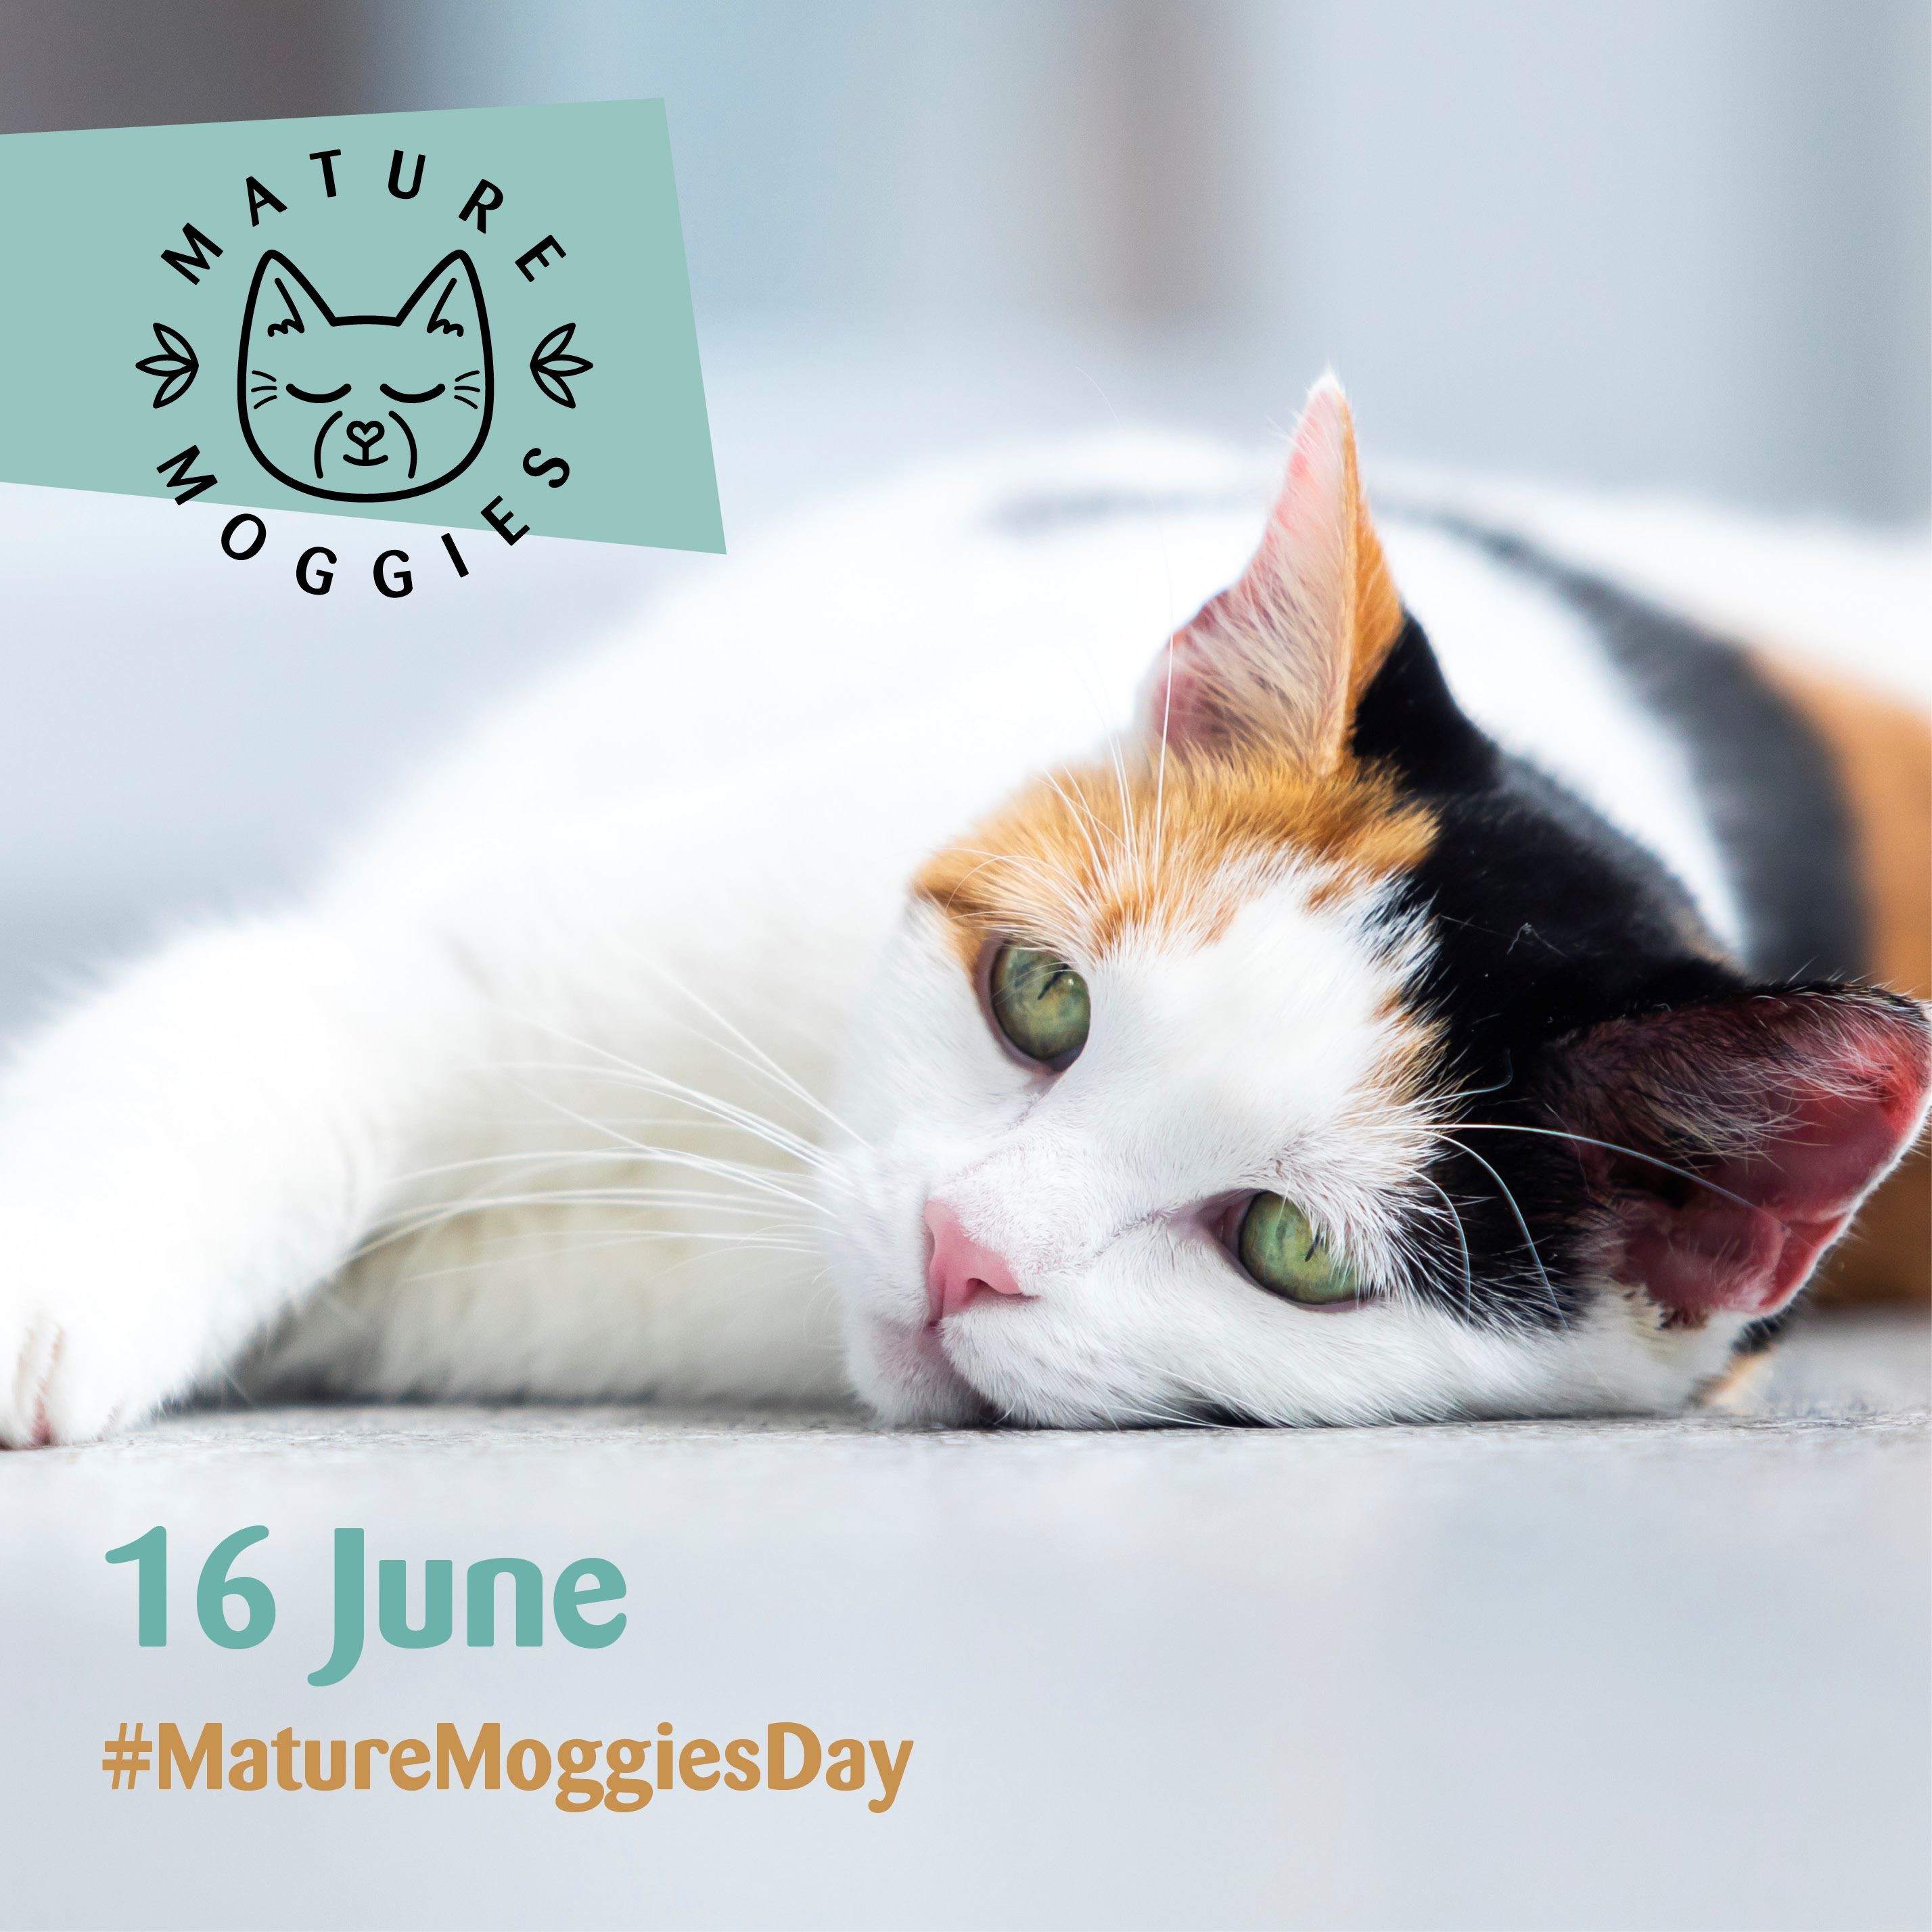 Mature Moggies Day (16 juni) is een kans om de oudere katten te verdedigen die er drie keer langer over doen om een ​​nieuw baasje te vinden dan jongere katten en kittens